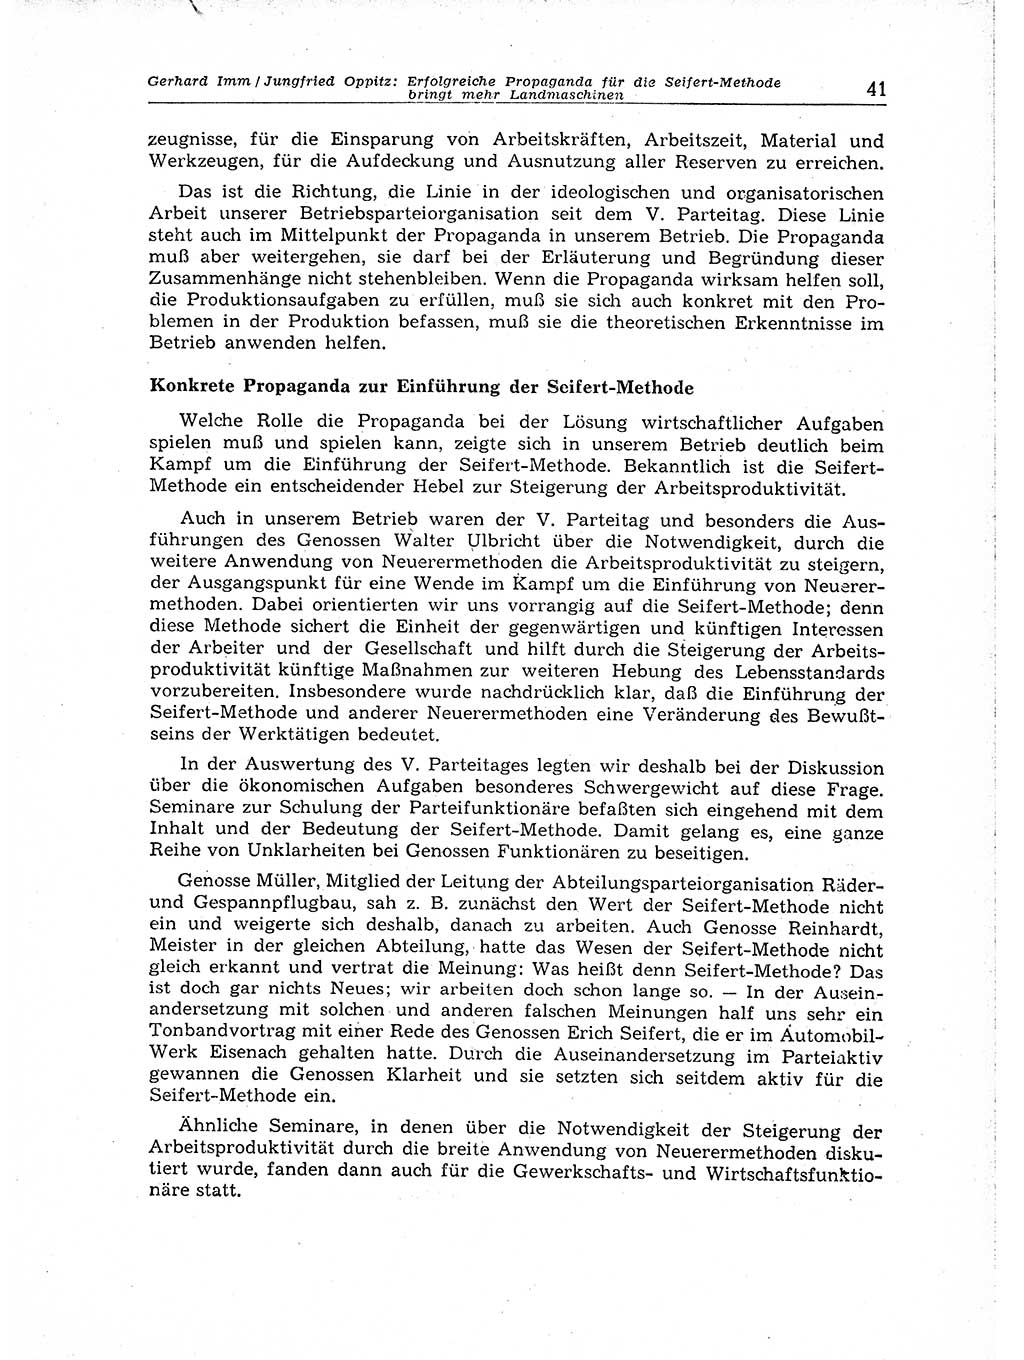 Neuer Weg (NW), Organ des Zentralkomitees (ZK) der SED (Sozialistische Einheitspartei Deutschlands) für Fragen des Parteiaufbaus und des Parteilebens, 14. Jahrgang [Deutsche Demokratische Republik (DDR)] 1959, Seite 41 (NW ZK SED DDR 1959, S. 41)